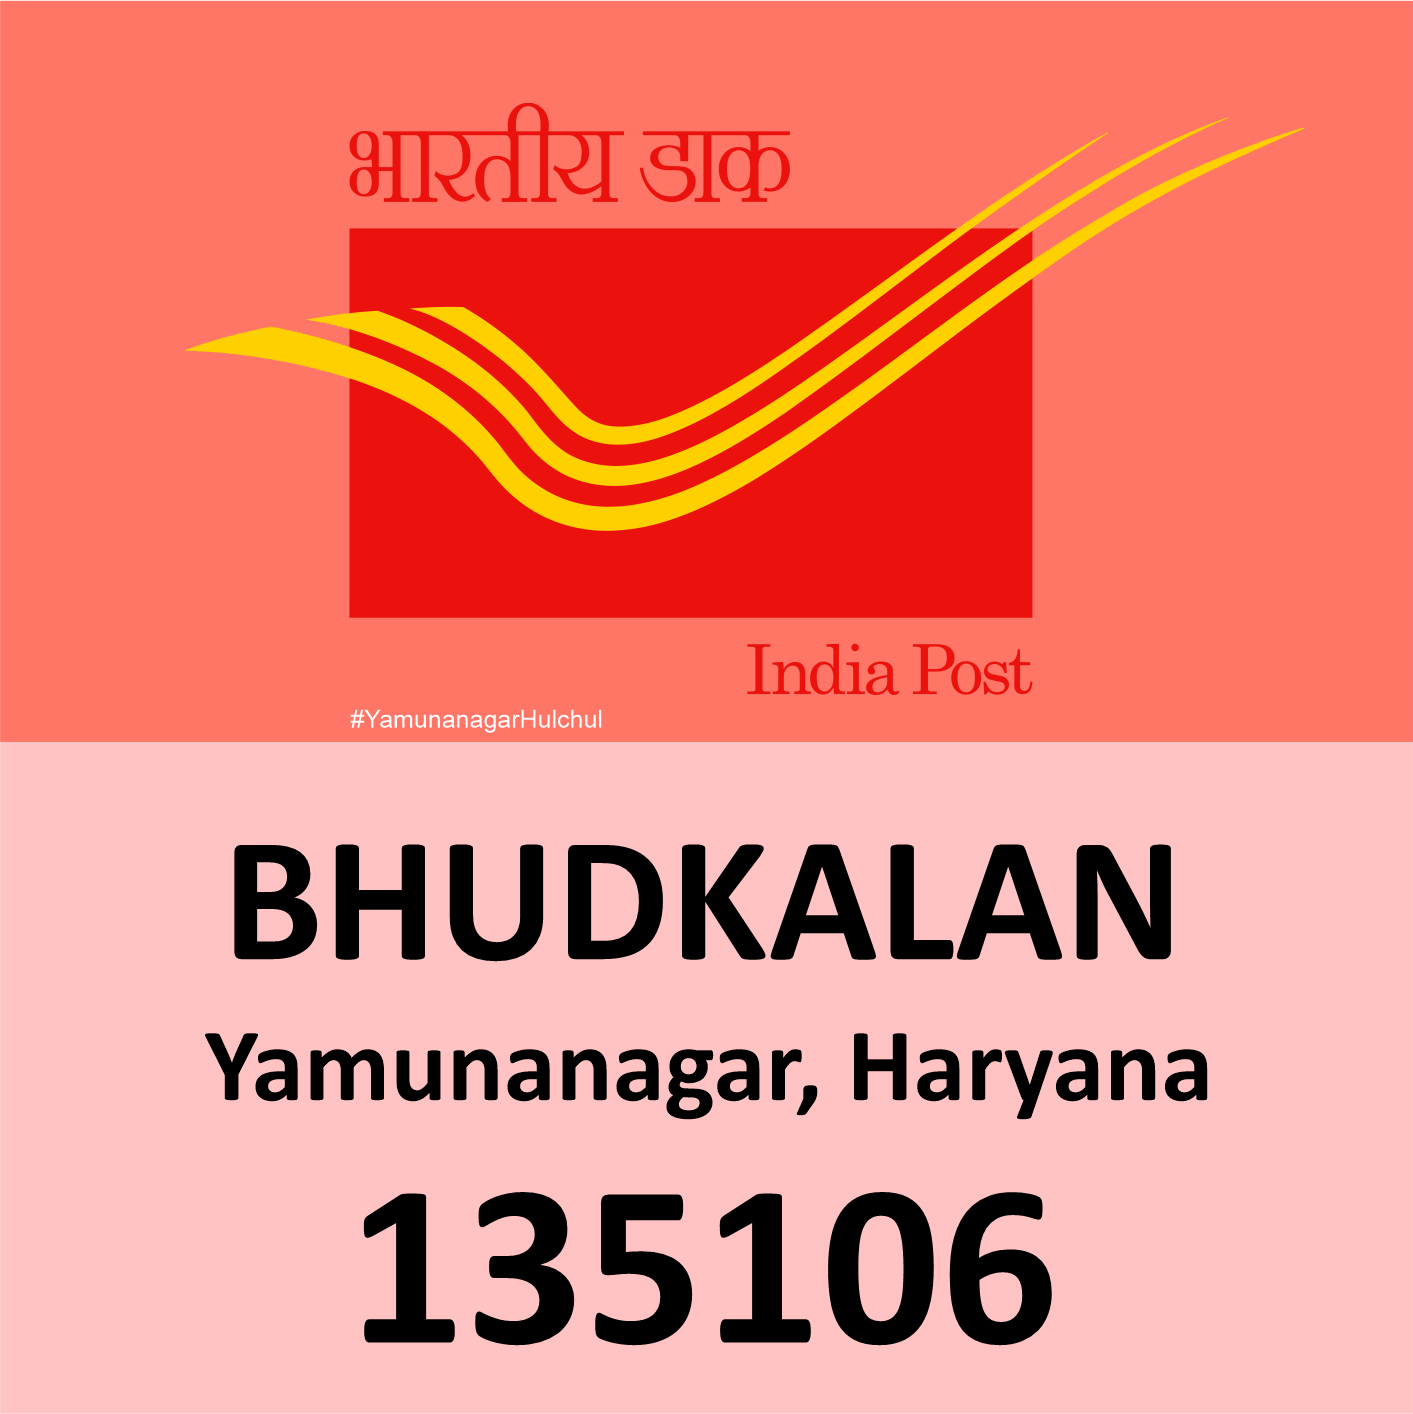 Pin Code of Bhudkalan, Yamunanagar is 135106, #YamunanagarHulchul, #यमुनानगरहलचल, #PanditKhabri, Pandit Khabri, Pin Code of Yamunanagar, Haryana,